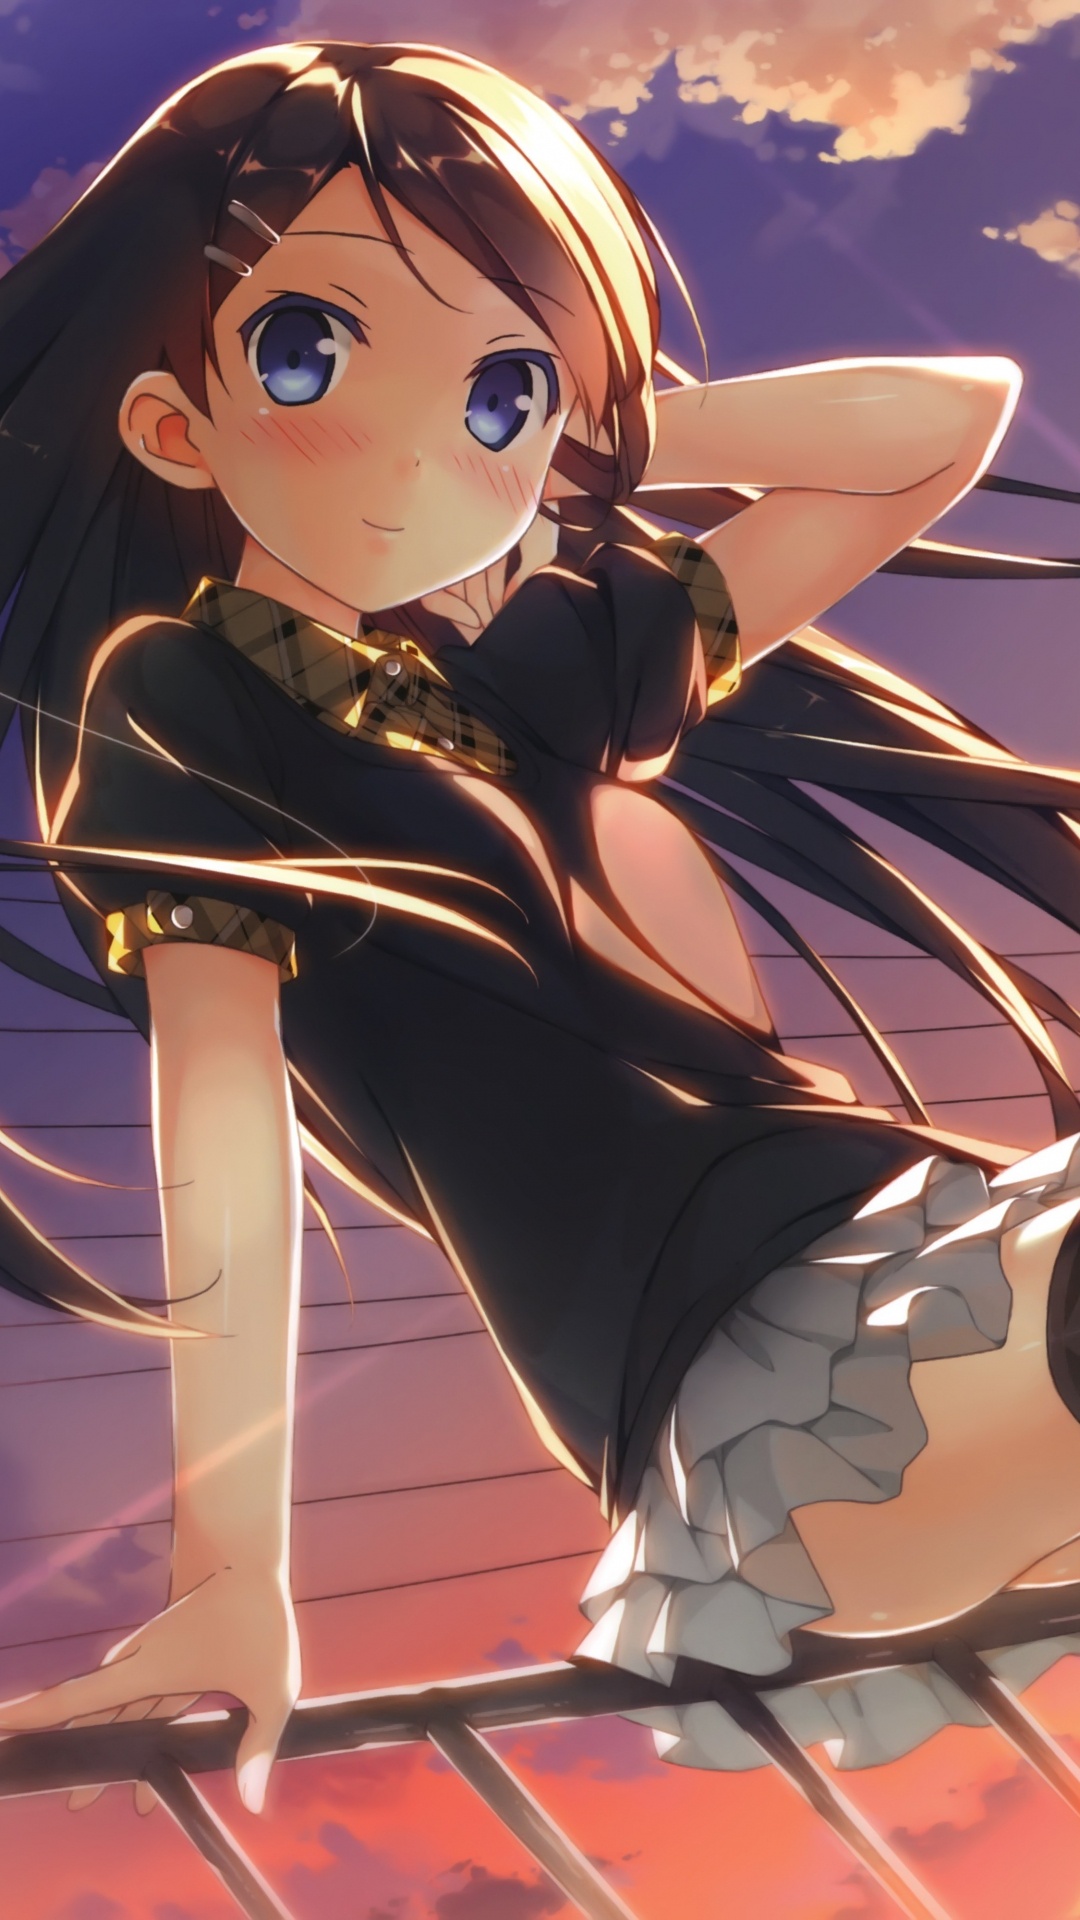 Mädchen in Schwarz-weißer Schuluniform Anime-Charakter. Wallpaper in 1080x1920 Resolution